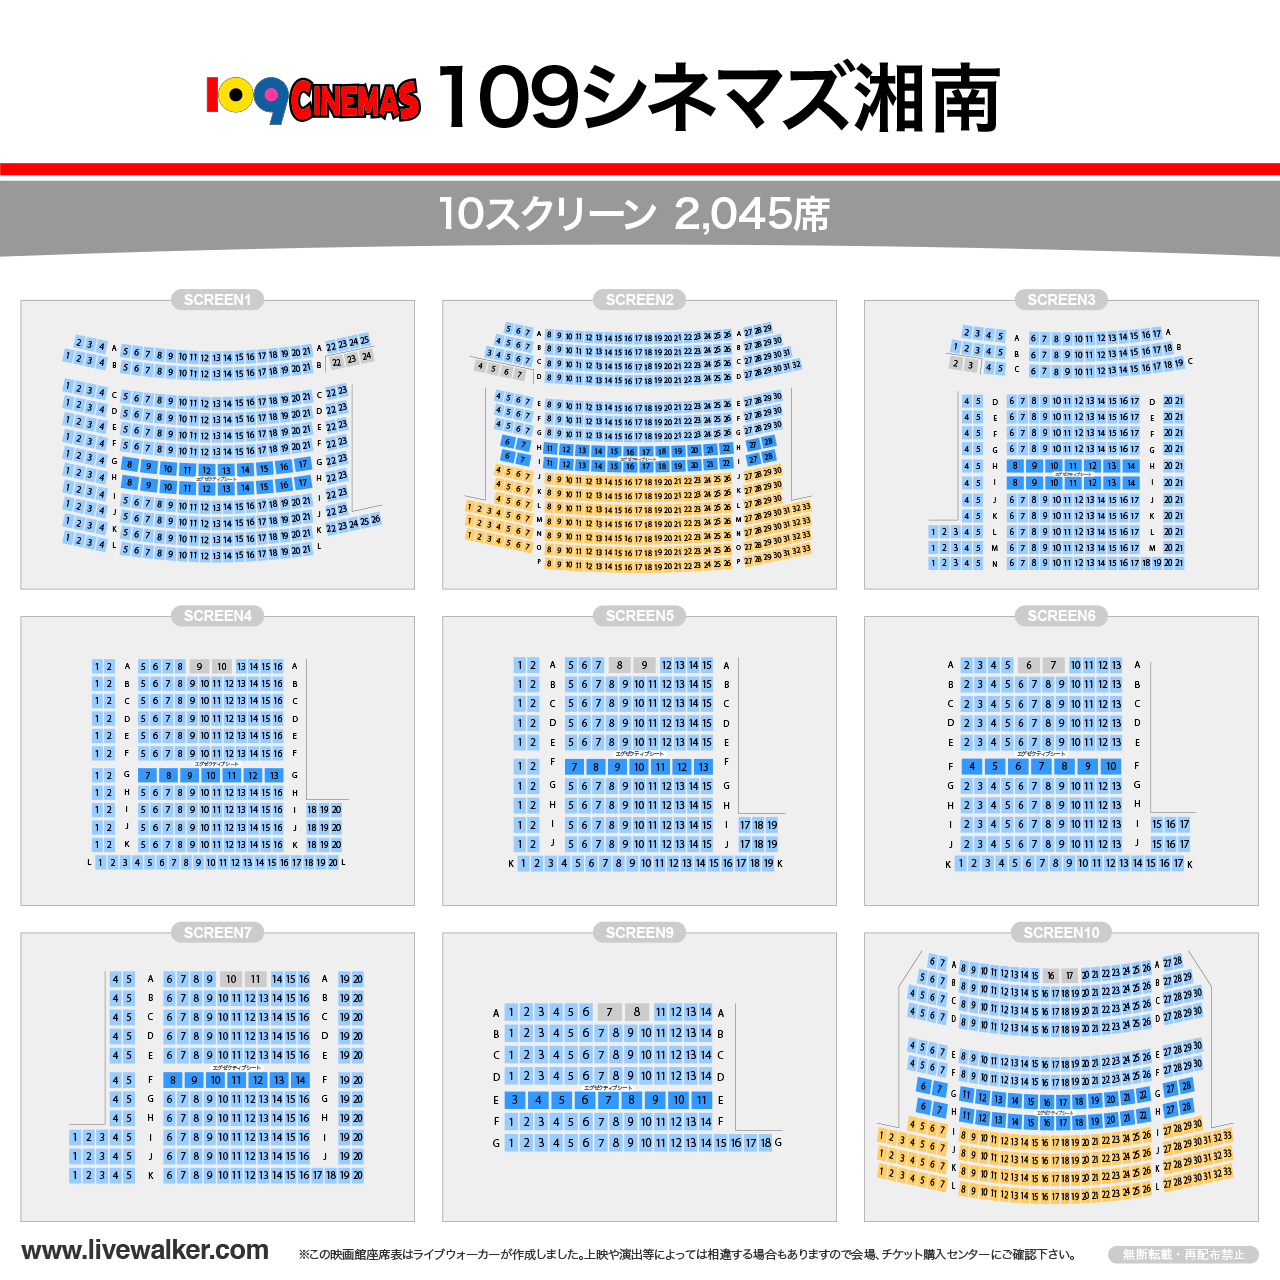 109シネマズ湘南シアターの座席表